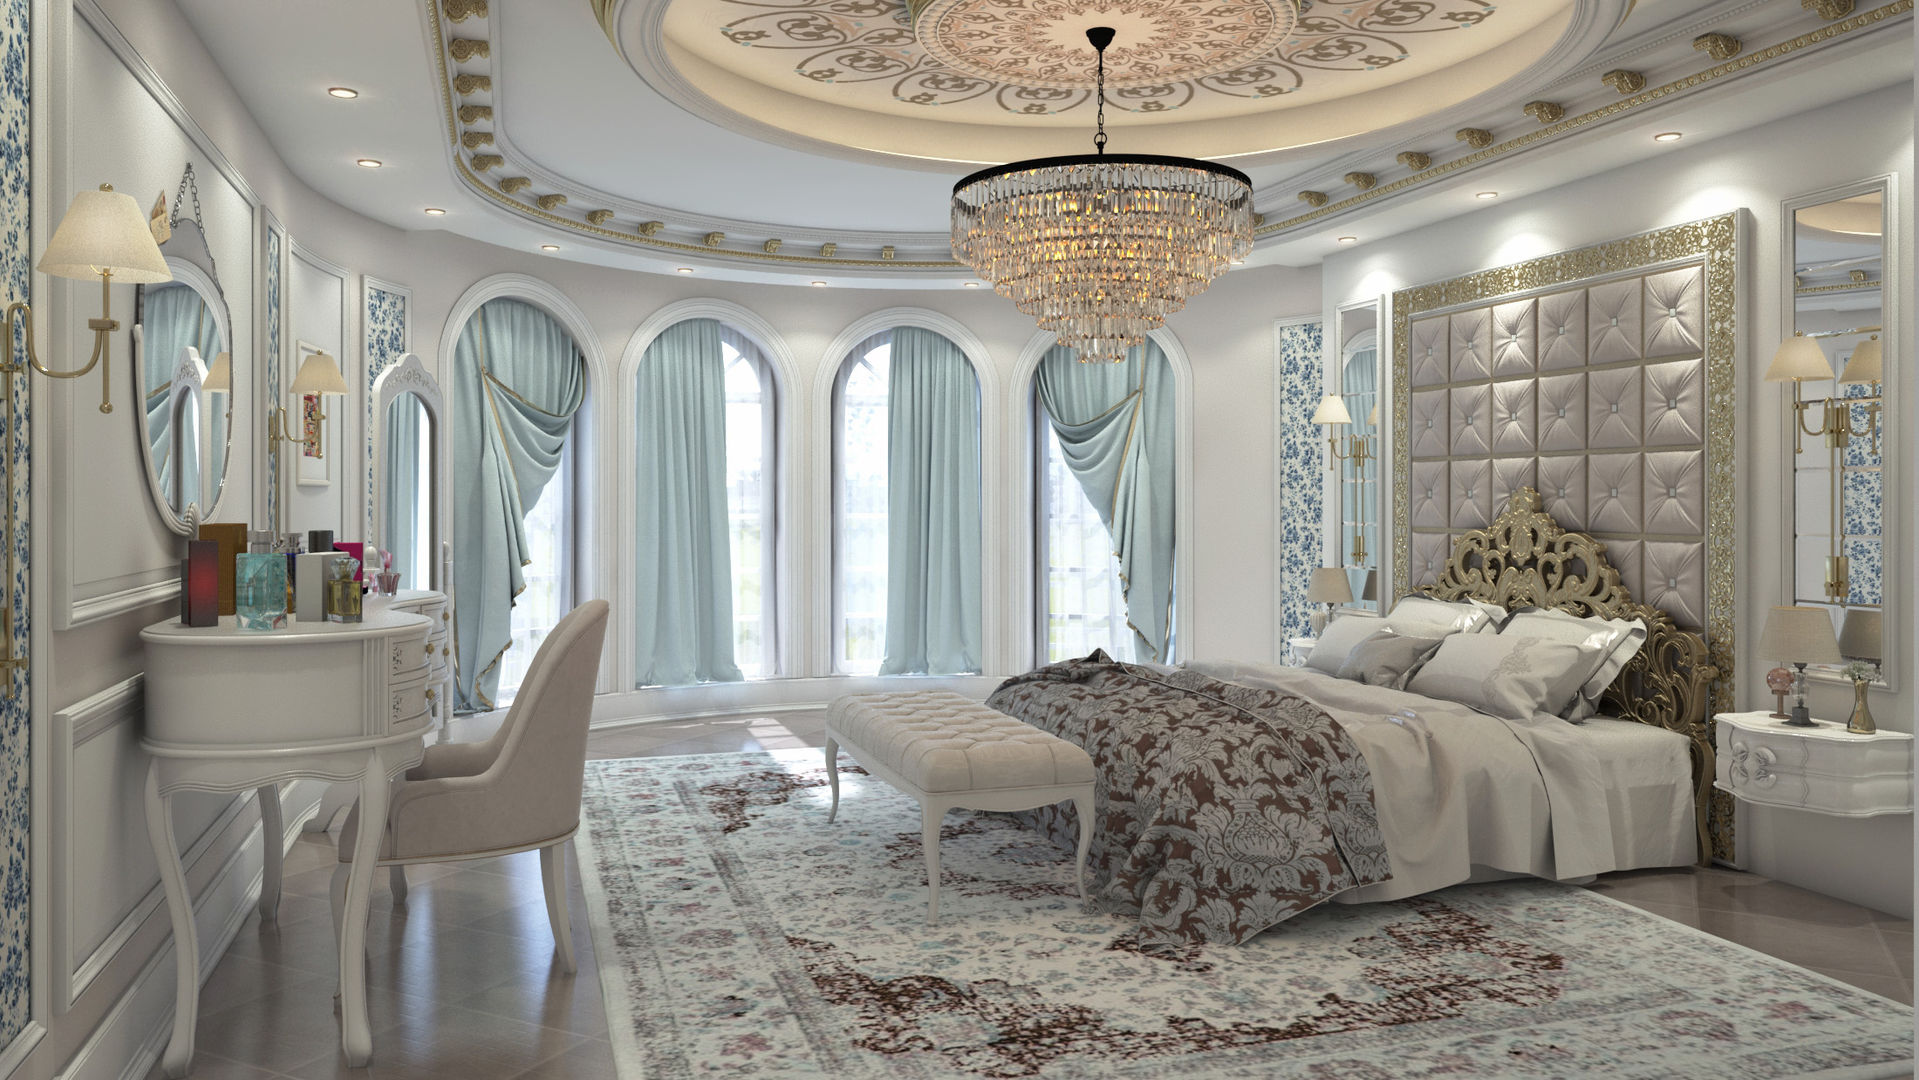 Classic Bedroom, Rêny Rêny Dormitorios de estilo clásico